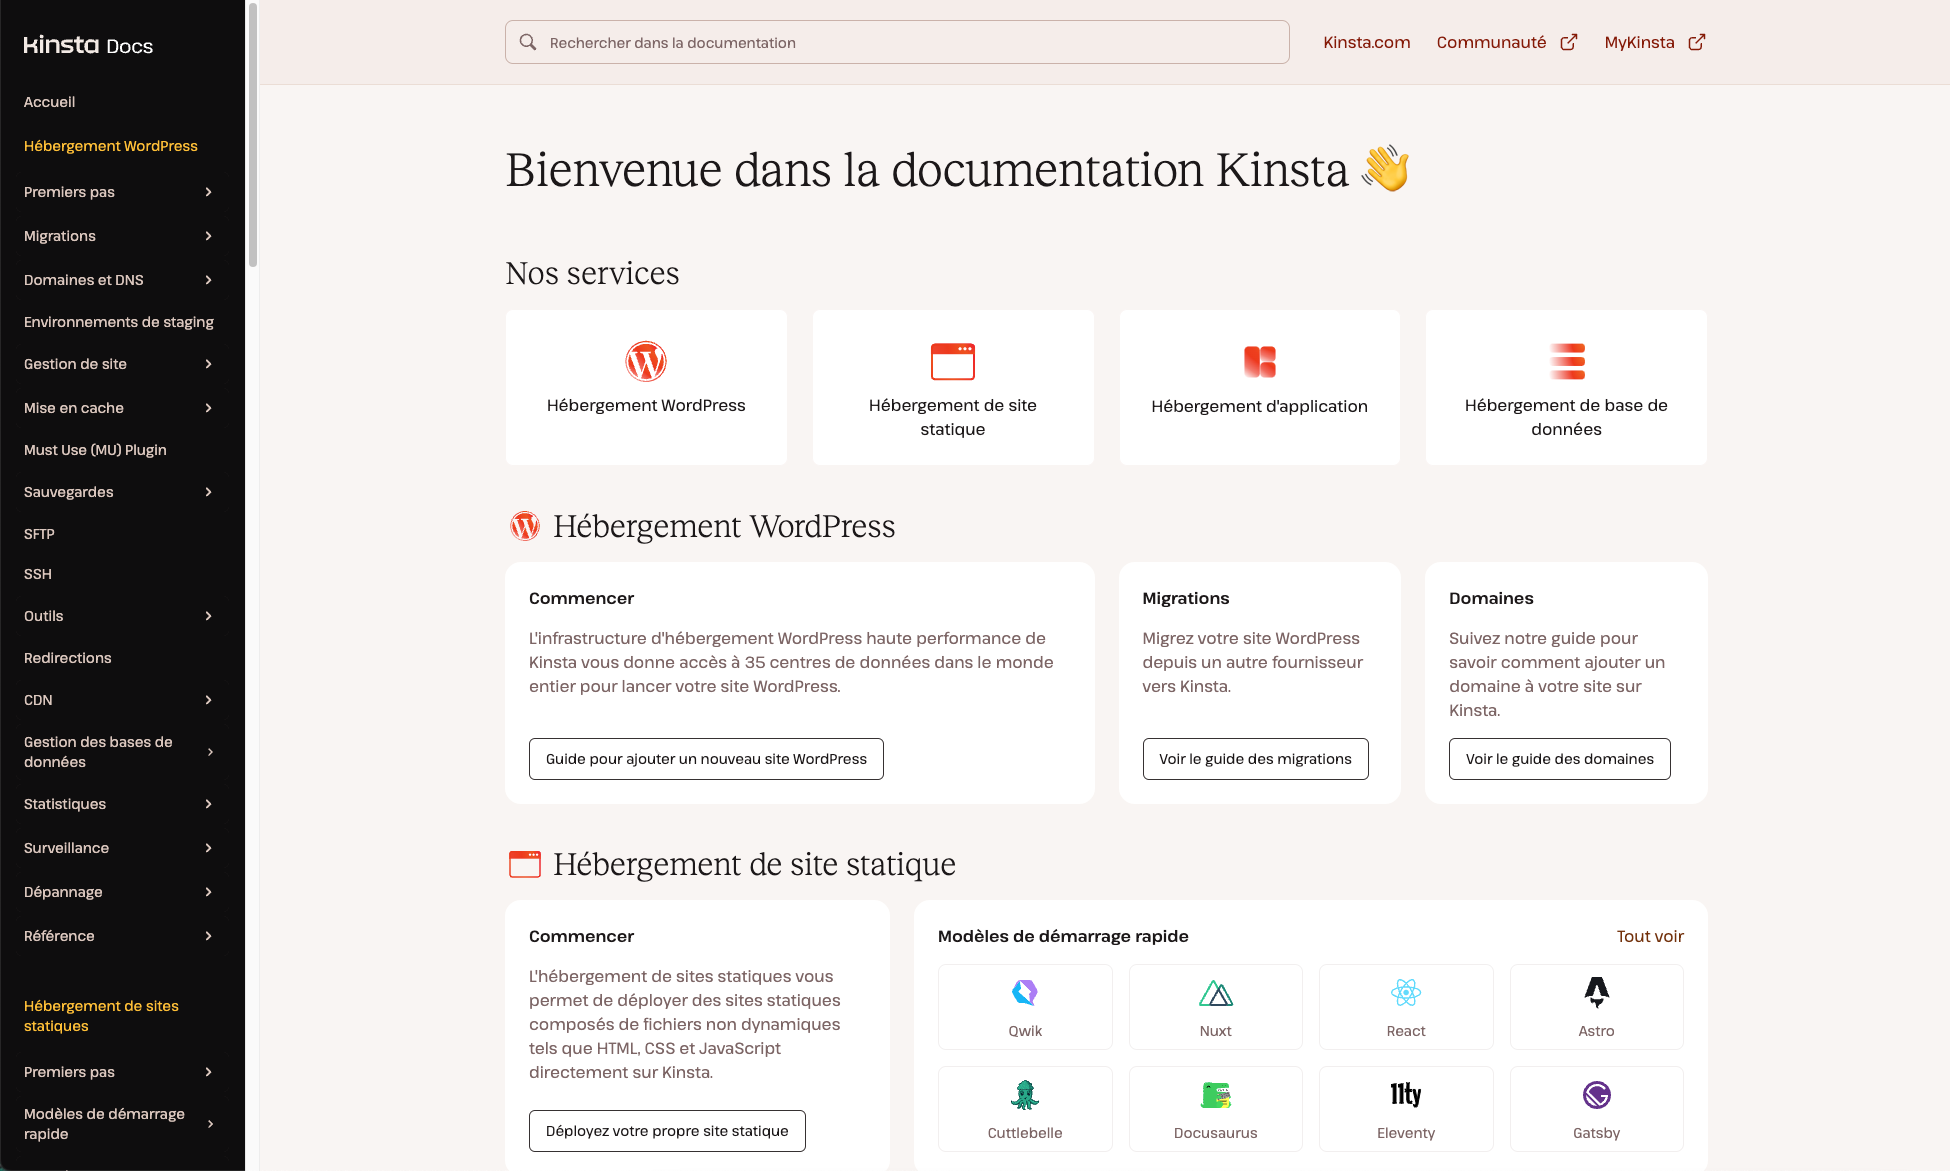 Consultez la page d'accueil de la documentation de Kinsta en français.